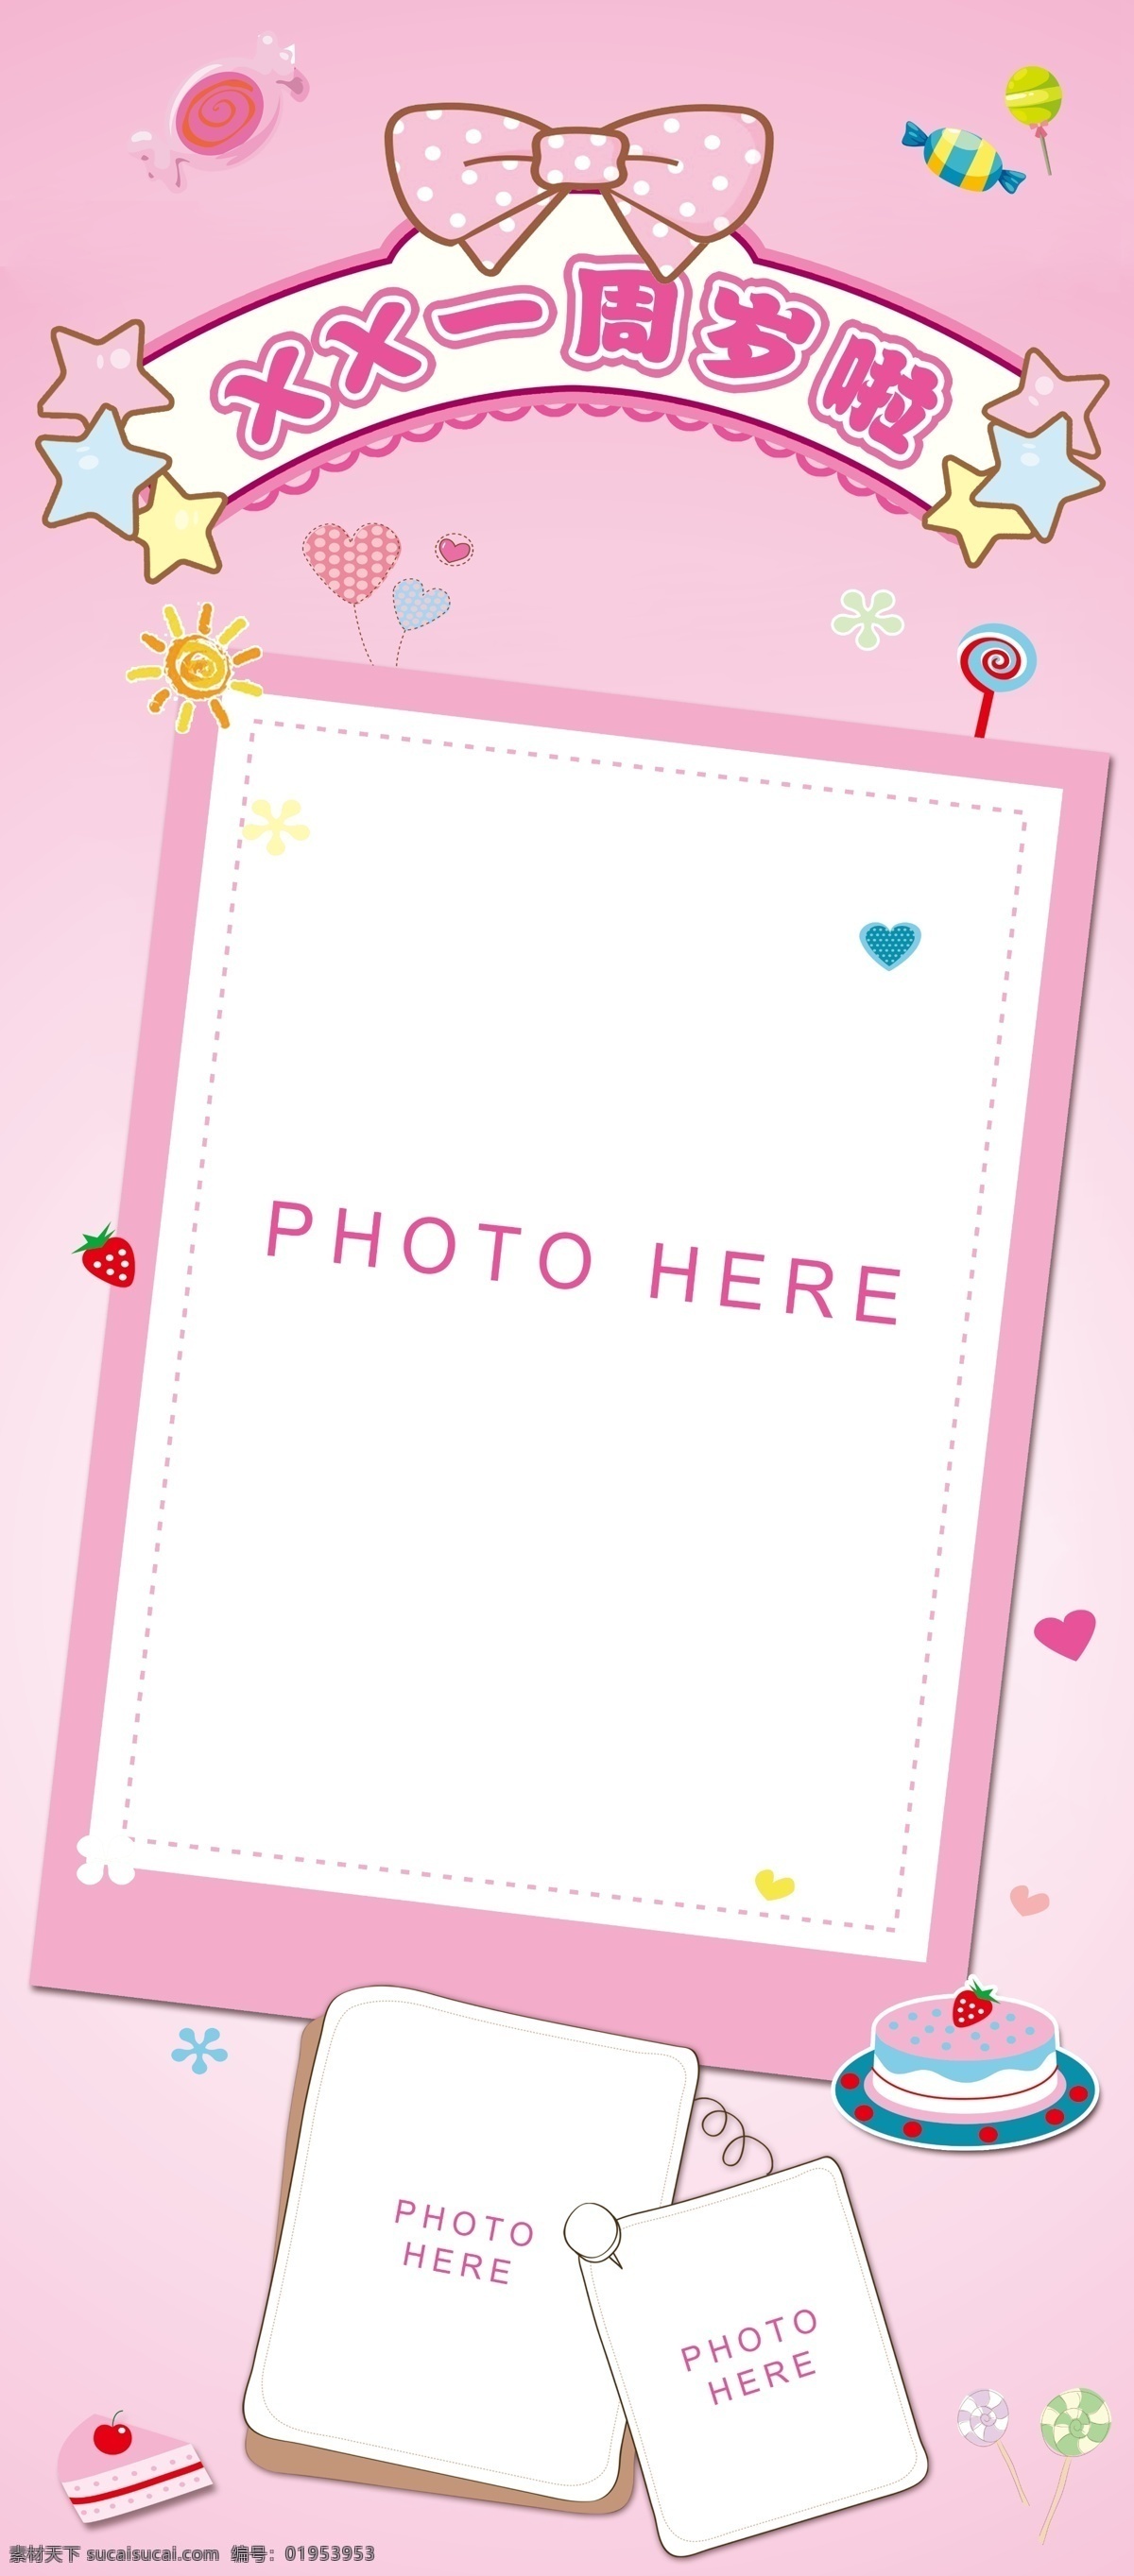 周岁生日展架 周岁 儿童 婴儿 生日 展架 易拉宝 粉色 红色 蝴蝶结 蛋糕 星星 可爱 海报 写真